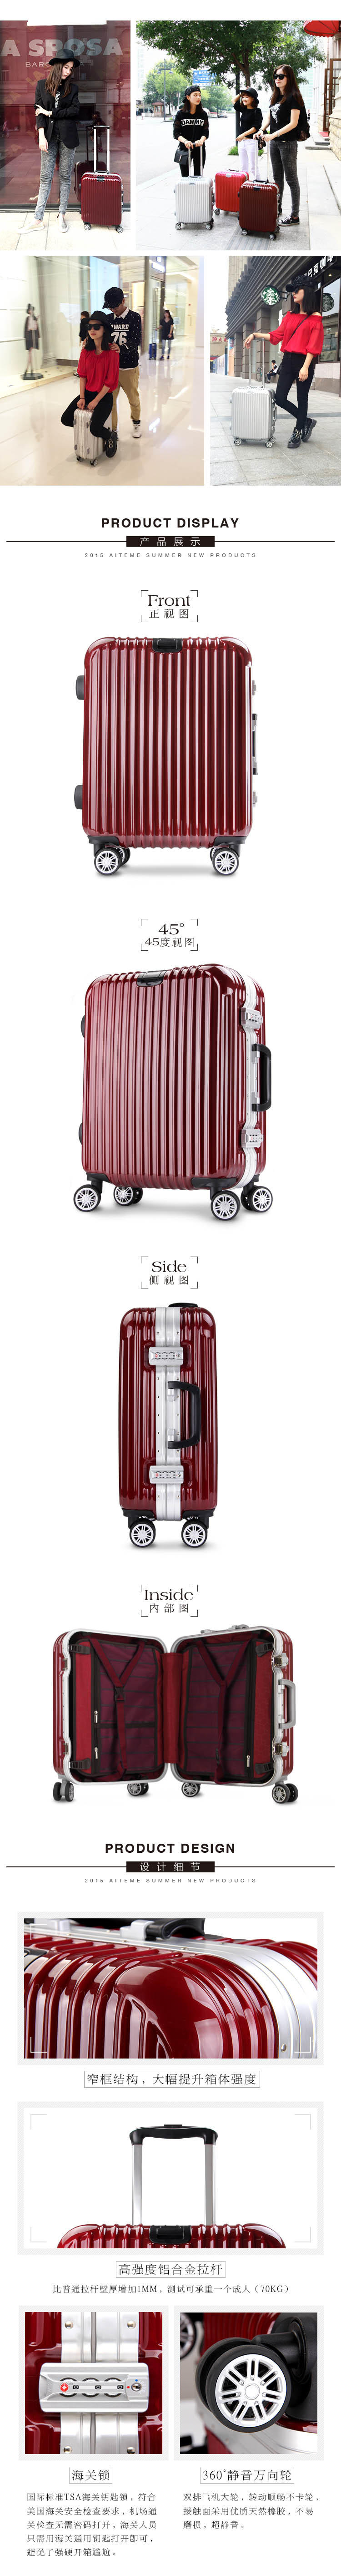 商务铝框密码拉杆箱万向轮女男行李登机箱韩版旅行箱26寸学生时尚潮流箱包箱子